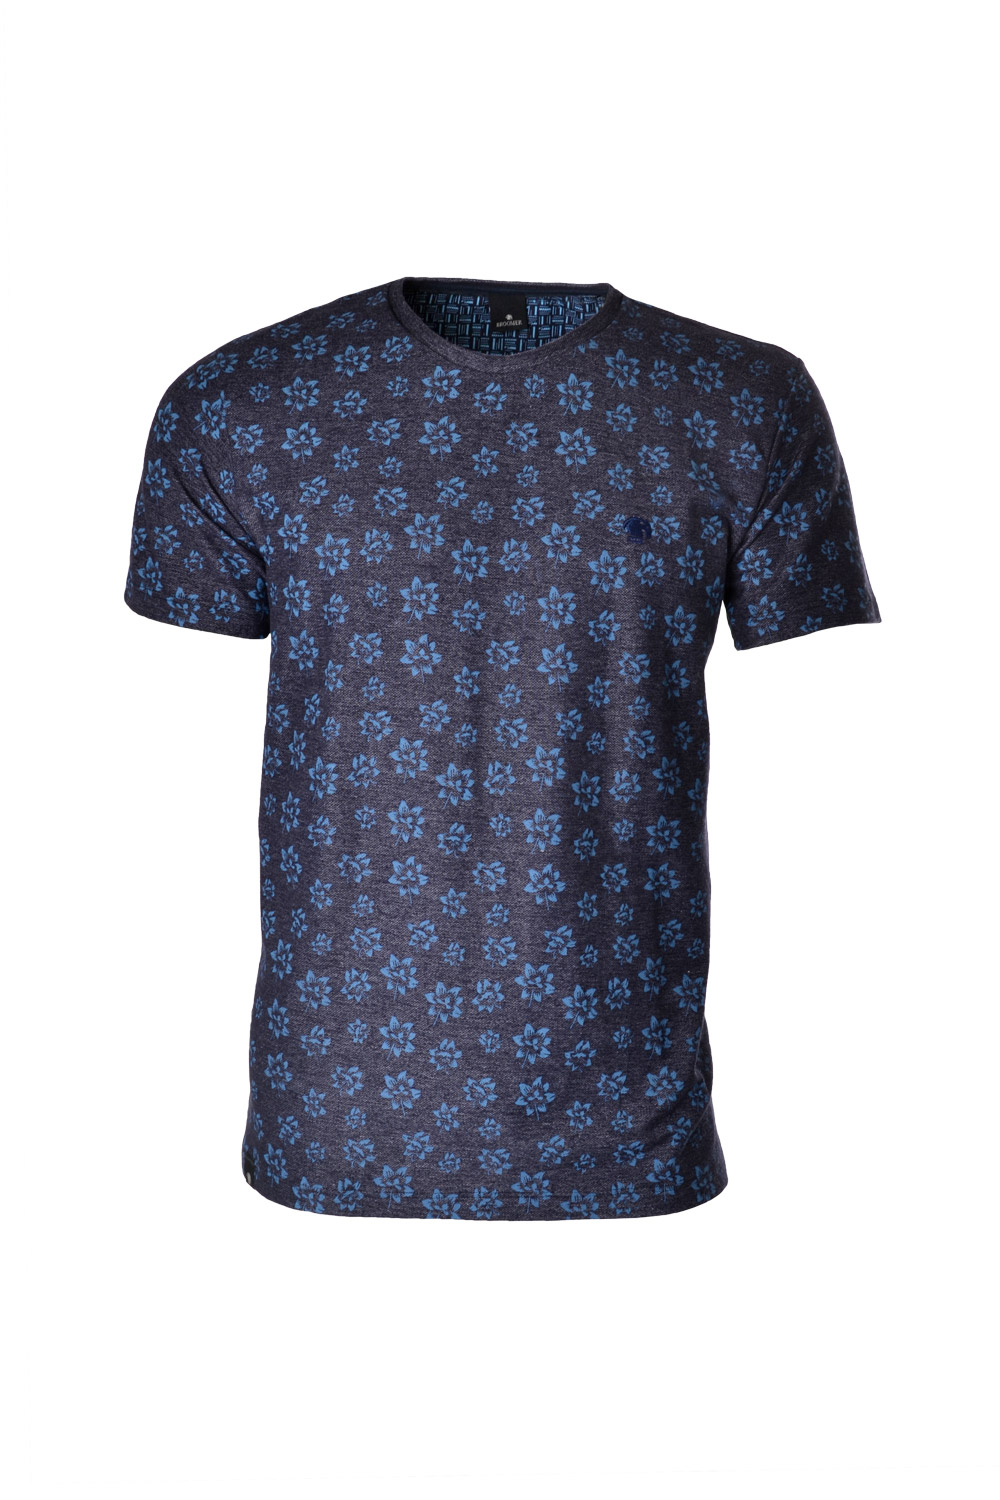 Camiseta Manga Curta Blues PoliAlgodão &amp; Elastano Compose Estampa Flower